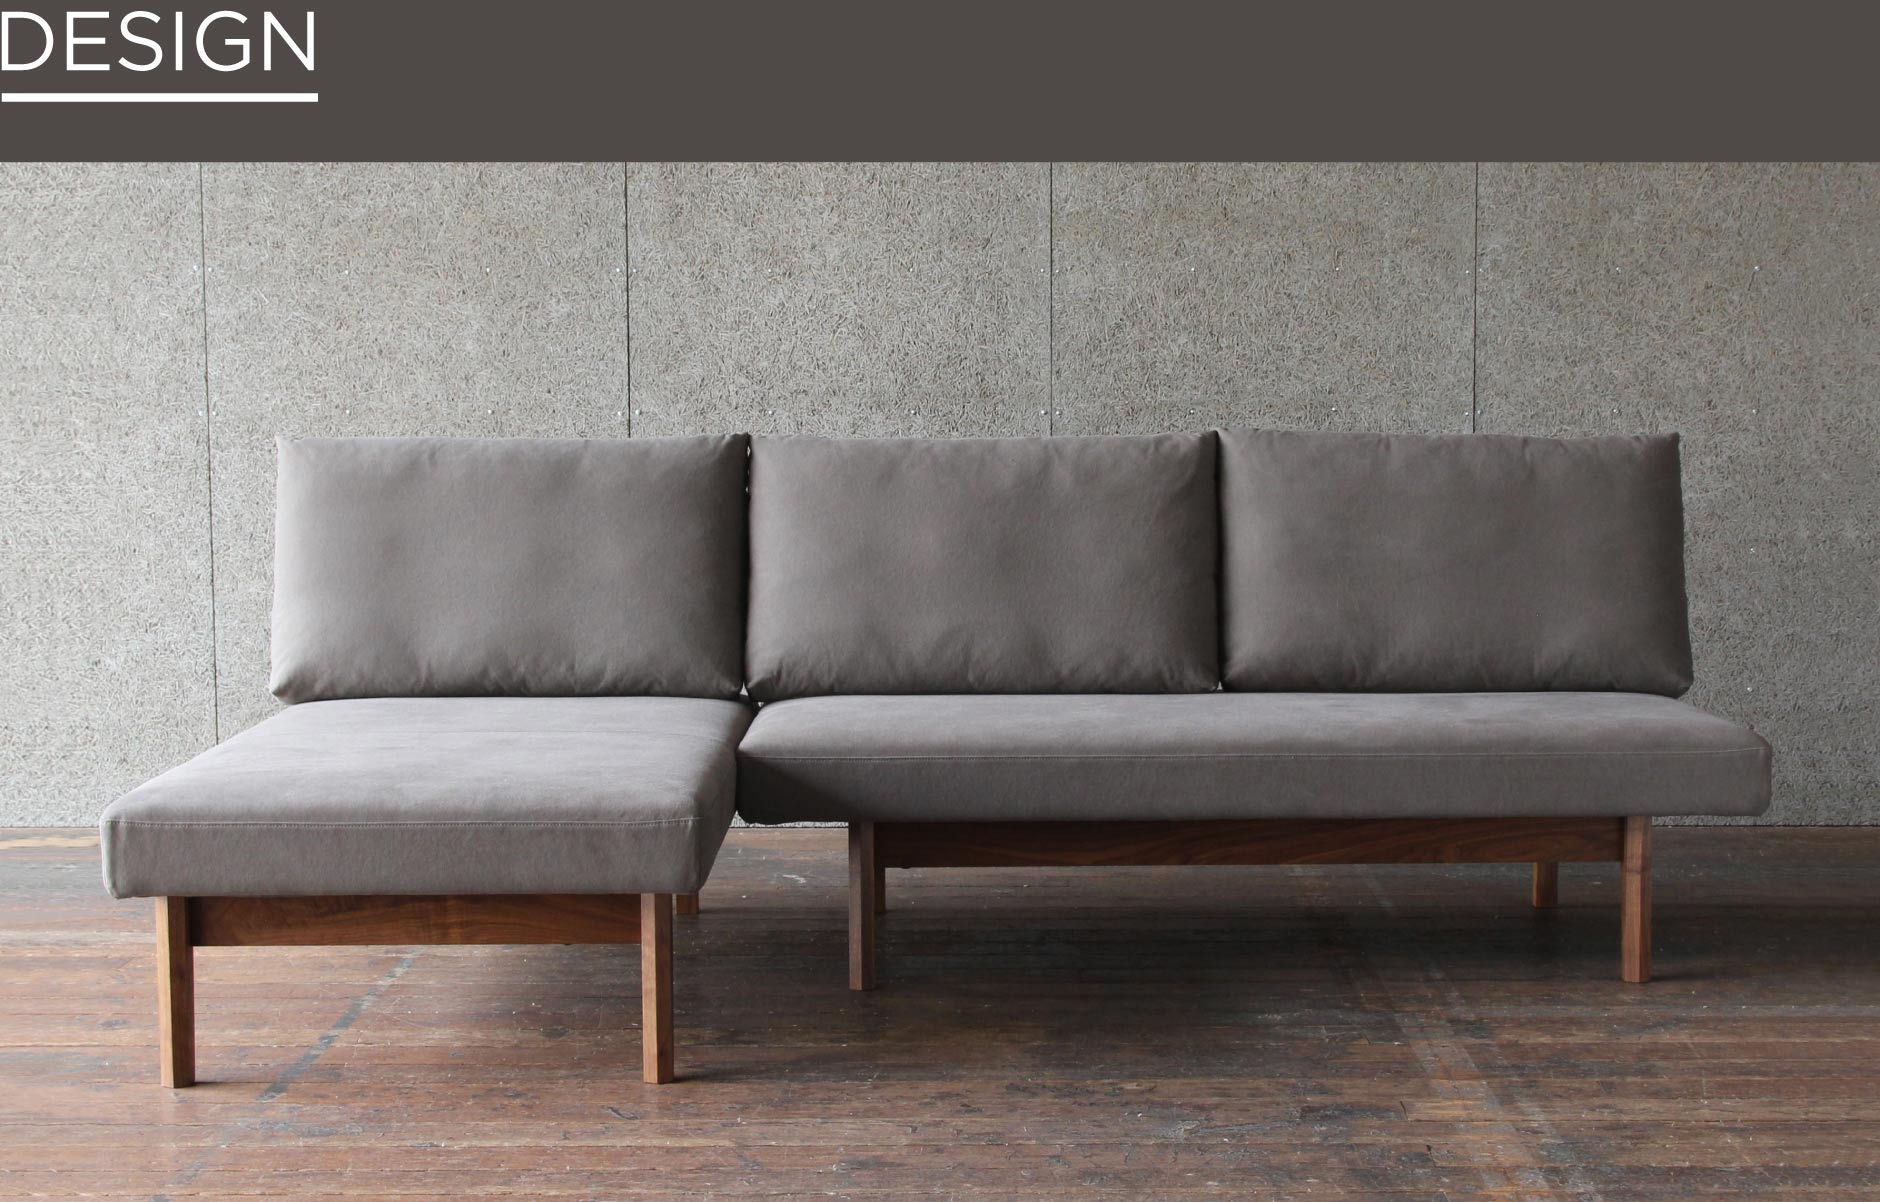 無駄のない洗練されたデザインのアームレスソファ。間取りやお部屋の広さに合わせてカスタムできる家具を、ぜひ横浜店でお試しください。